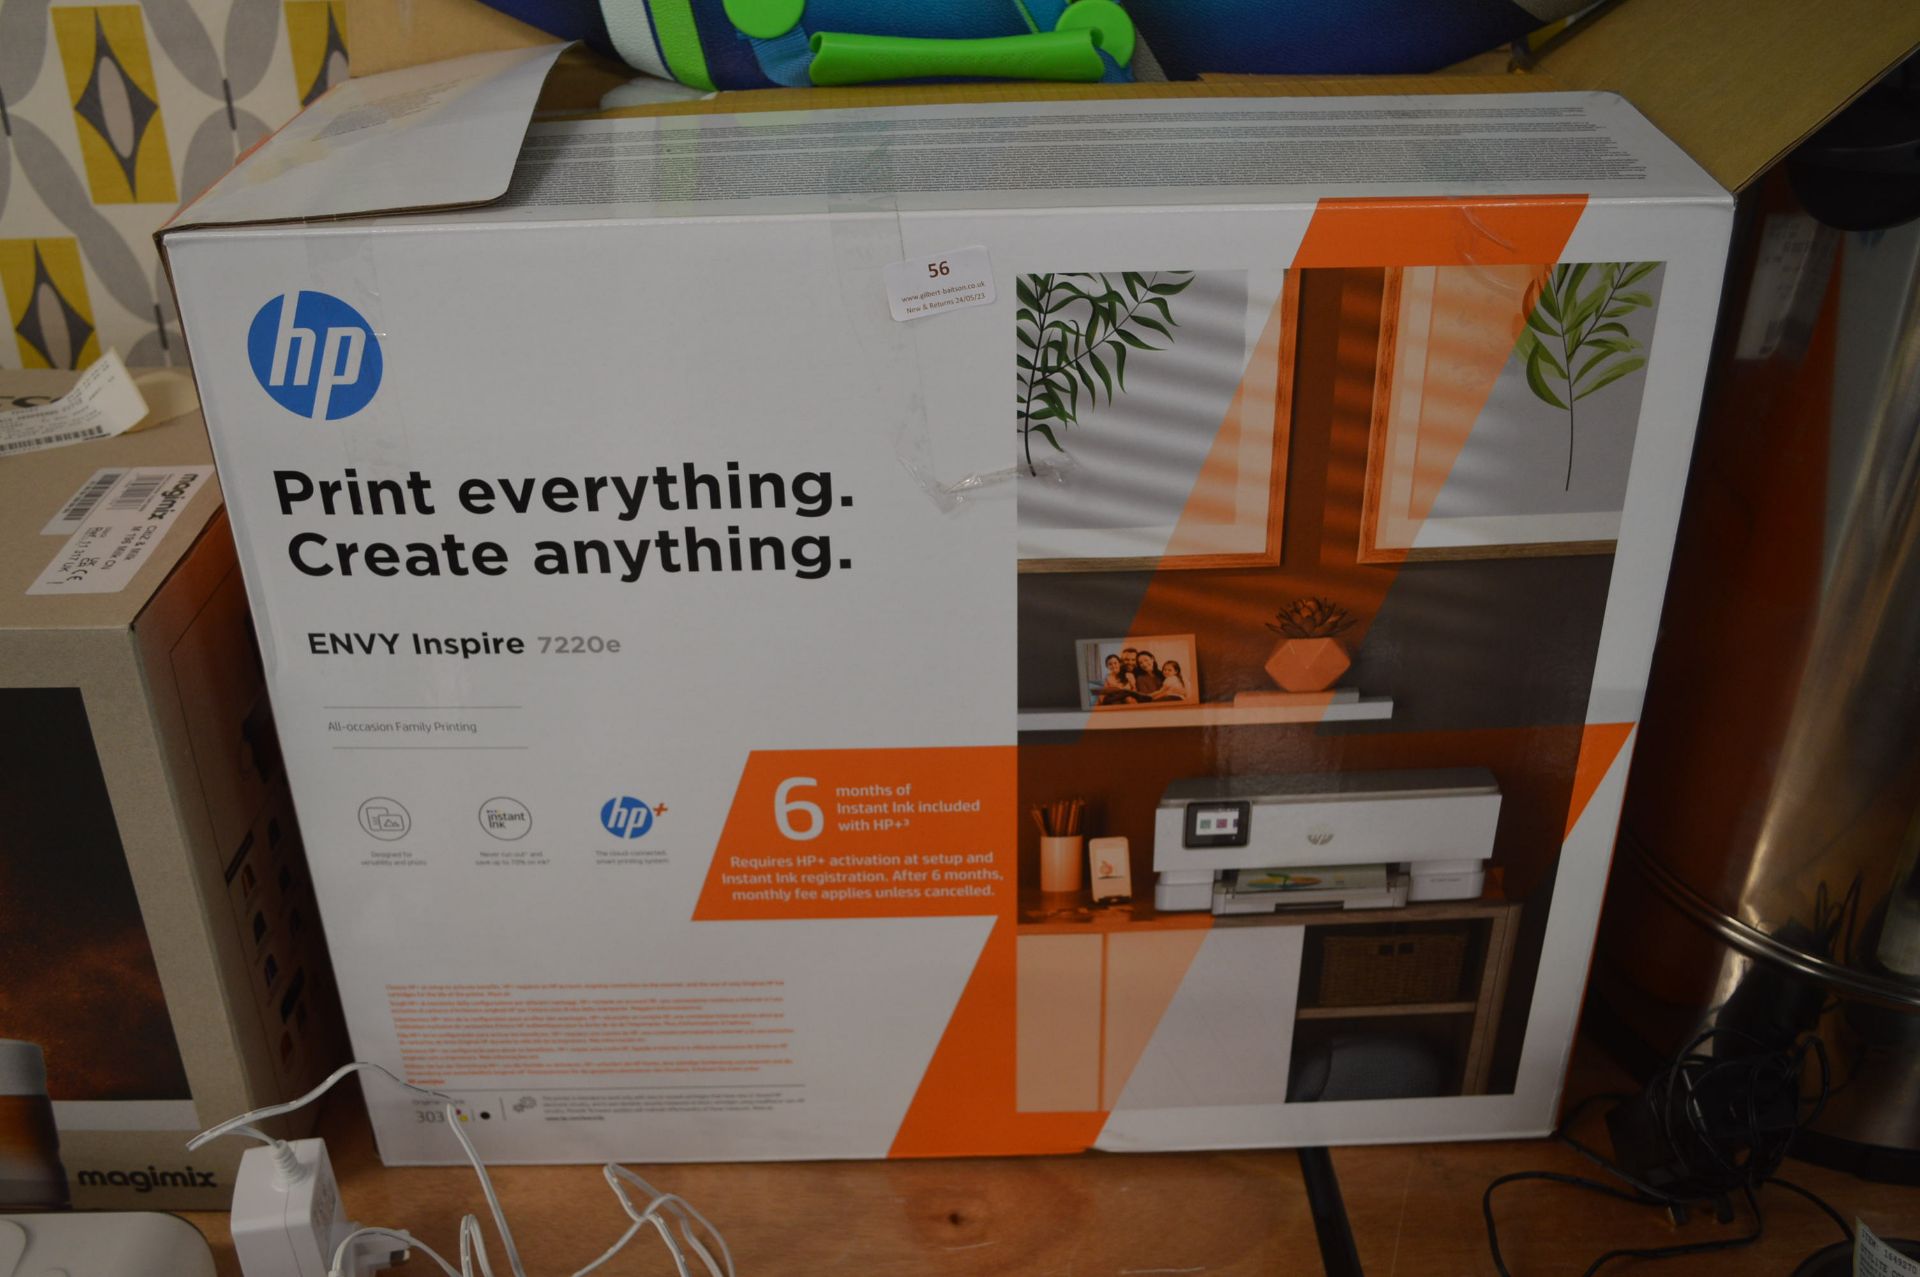 *HP Envy Inspire 7220E Printer